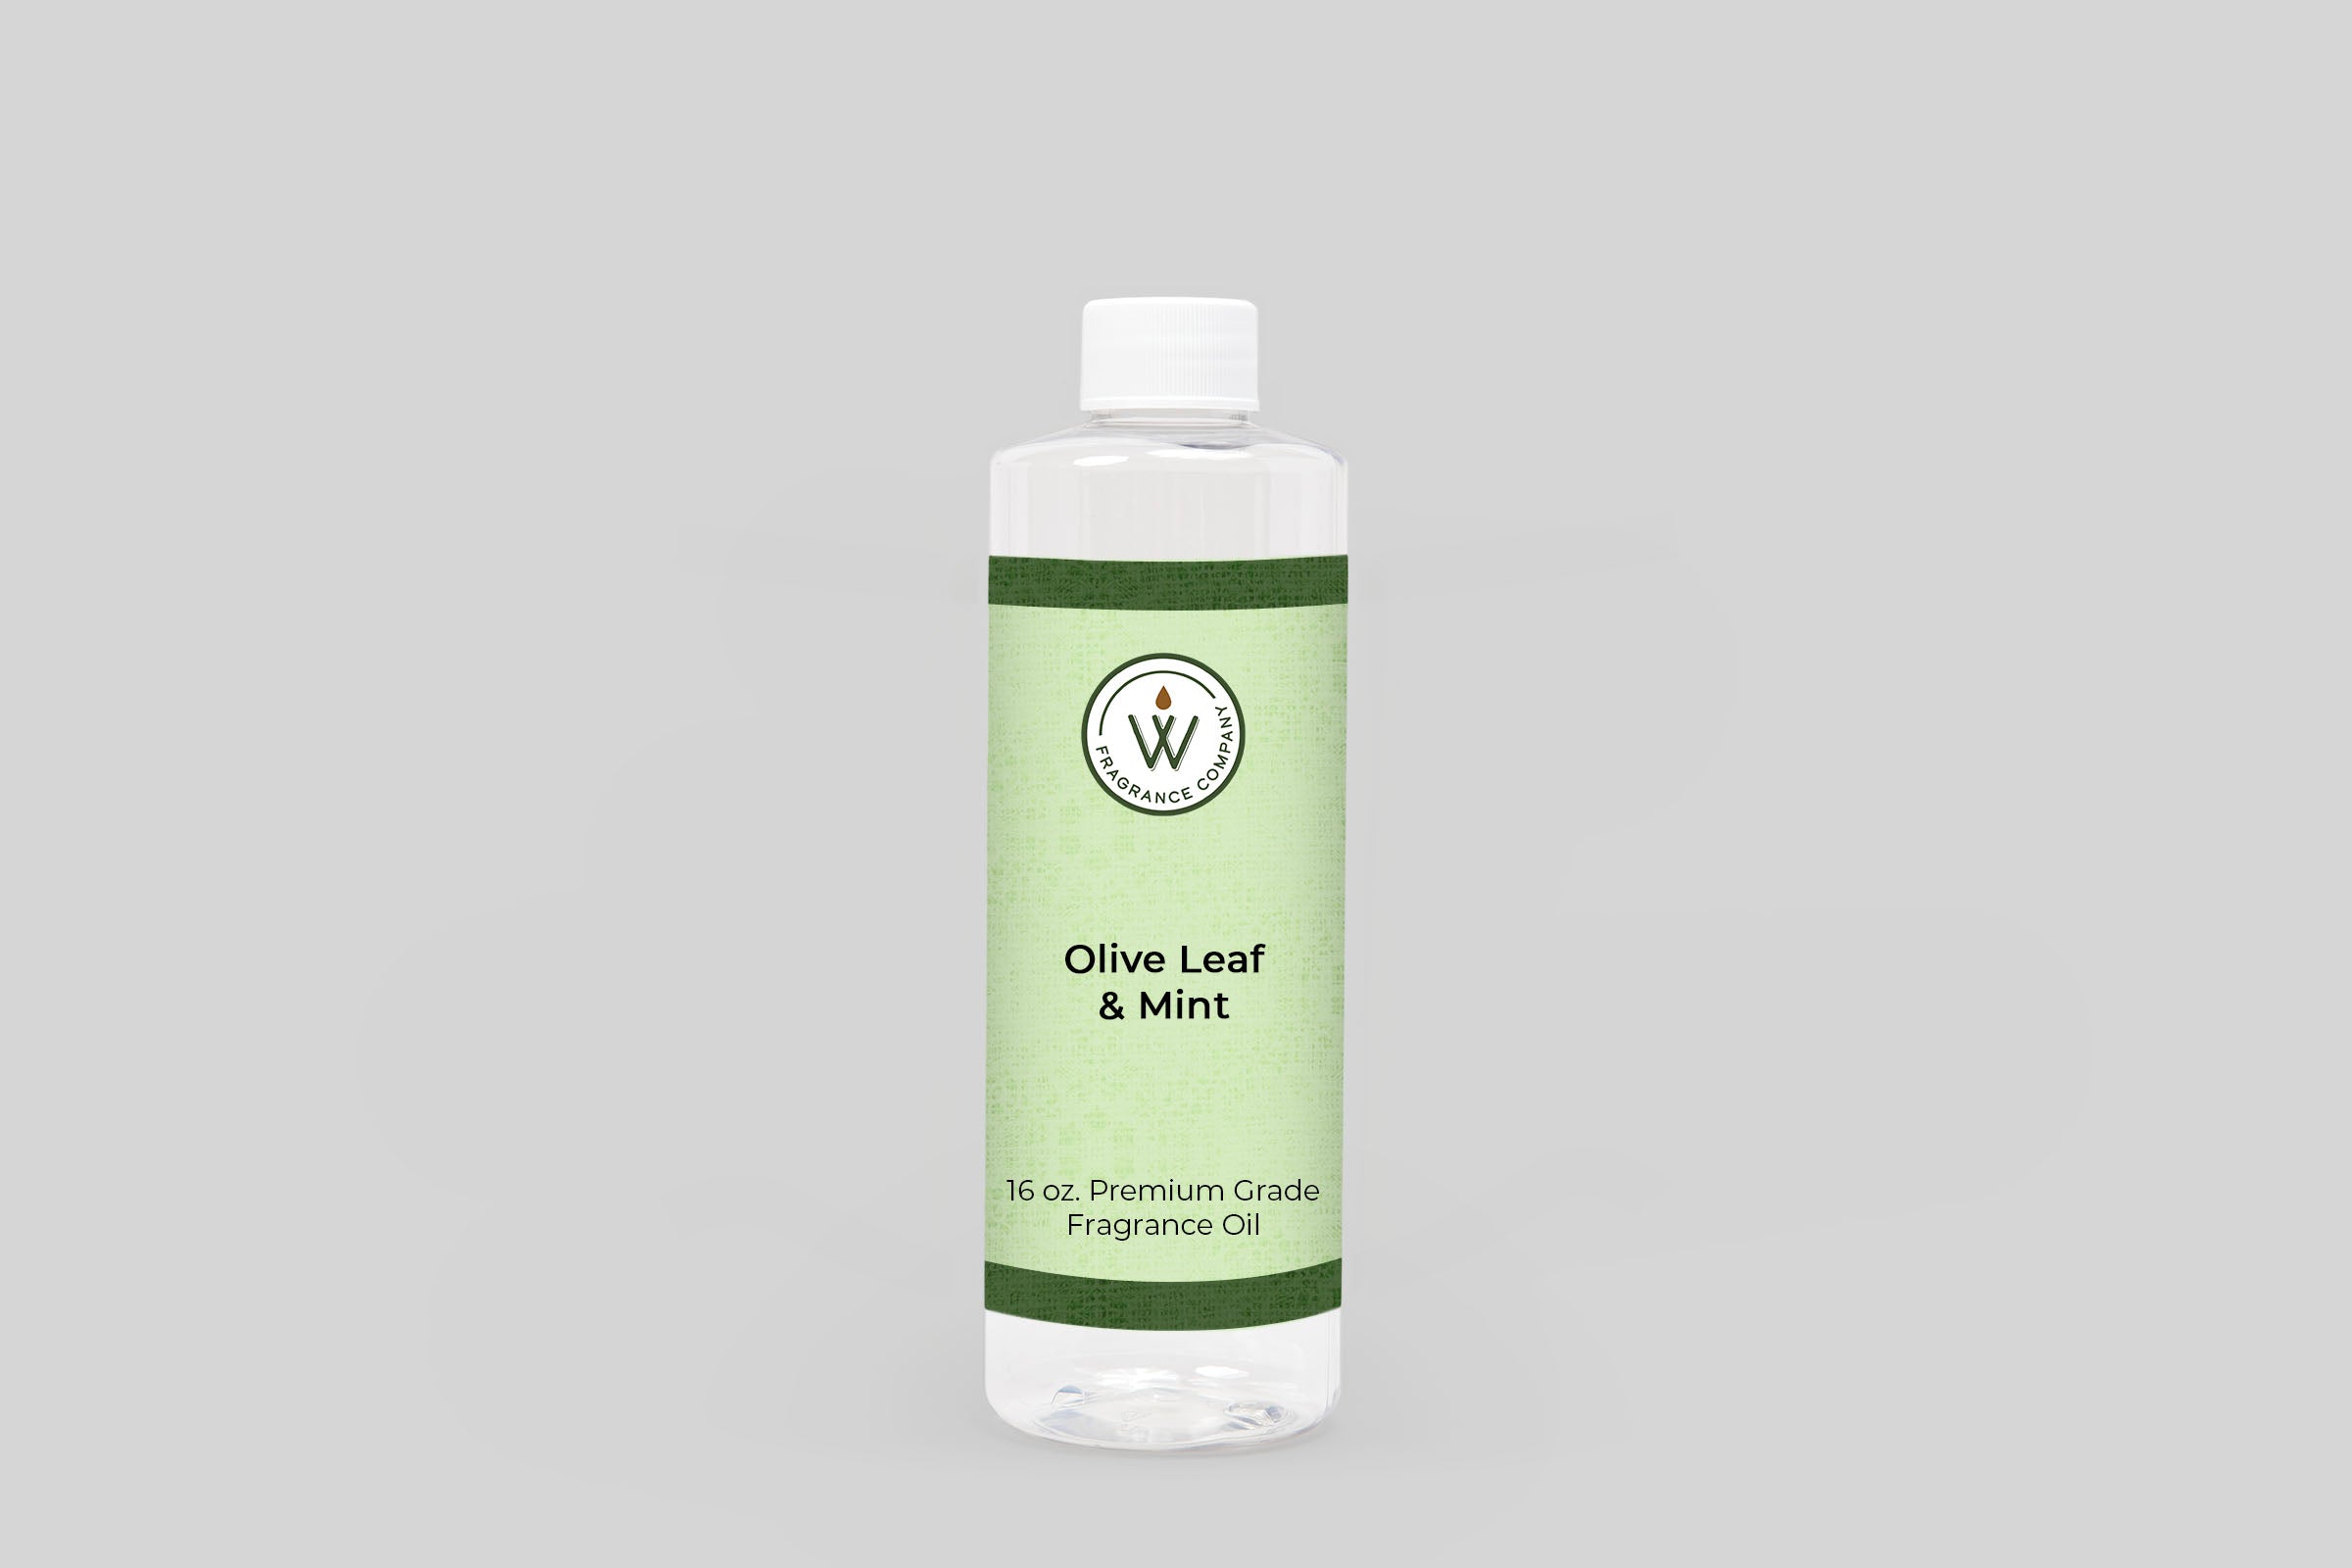 Olive Leaf & Mint Fragrance Oil